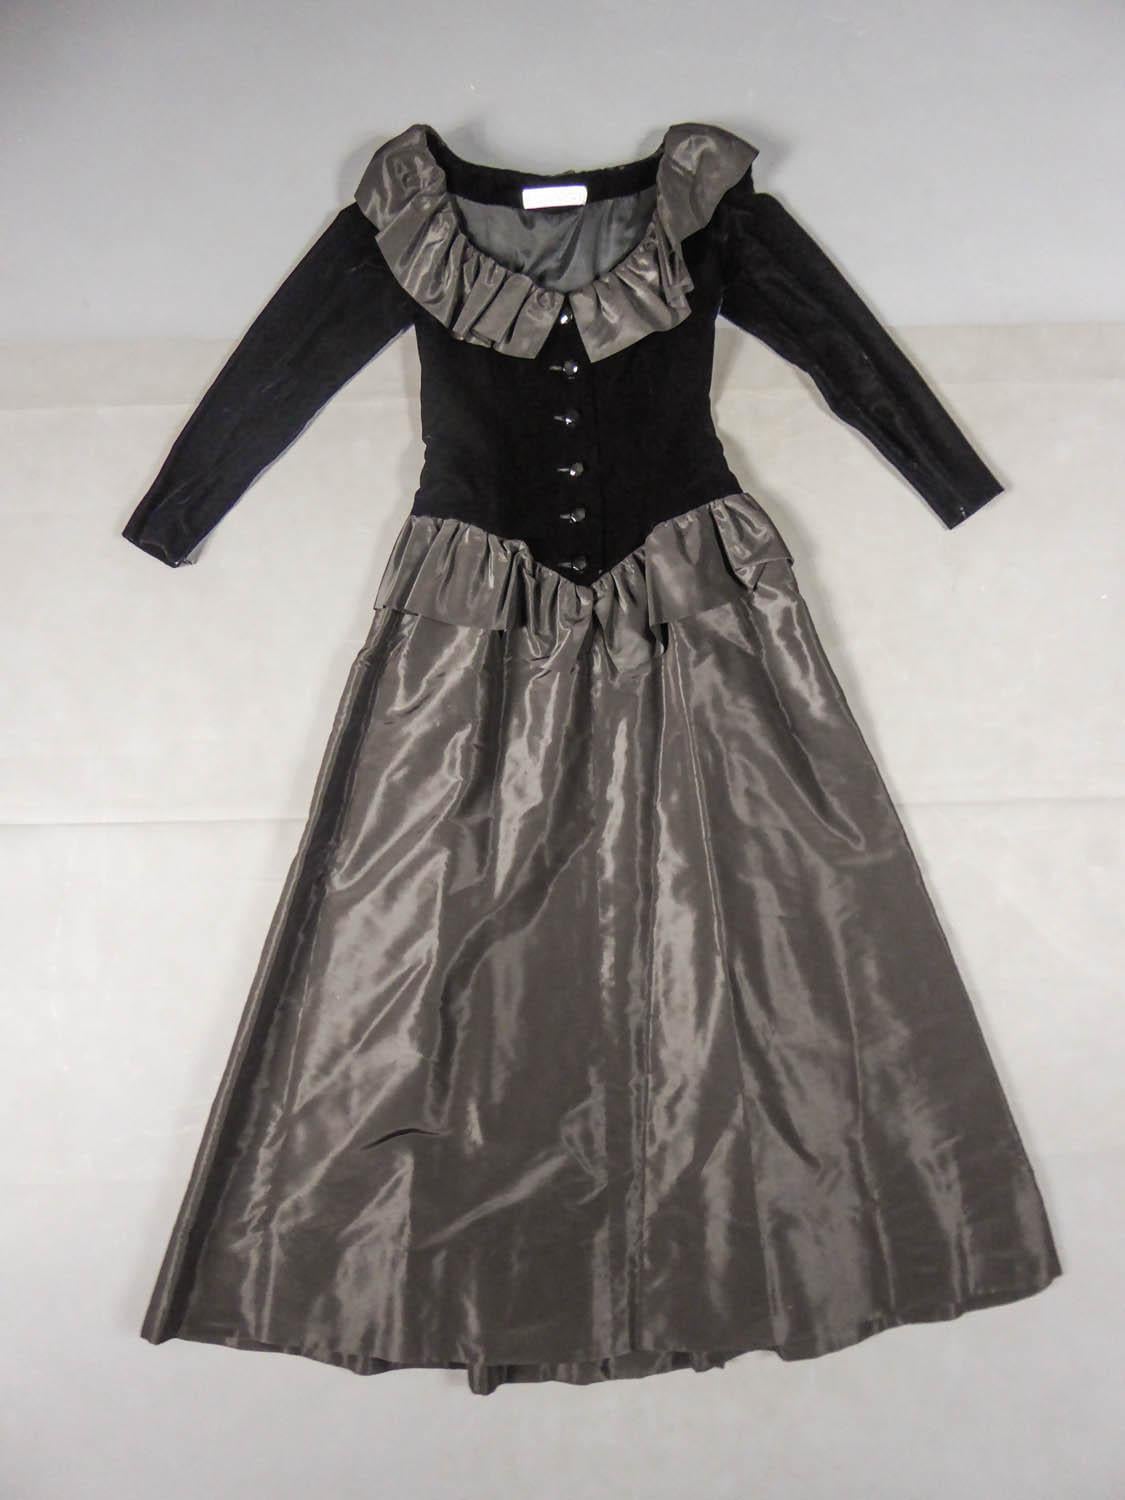 Circa 1980
France

Élégante robe du soir Givenchy Couture datant du début des années 1980. Jupe taille basse avec découpe en pointe sur le devant et volants en taffetas de soie noire. Bustier ajusté avec manches en velours noir et grand décolleté